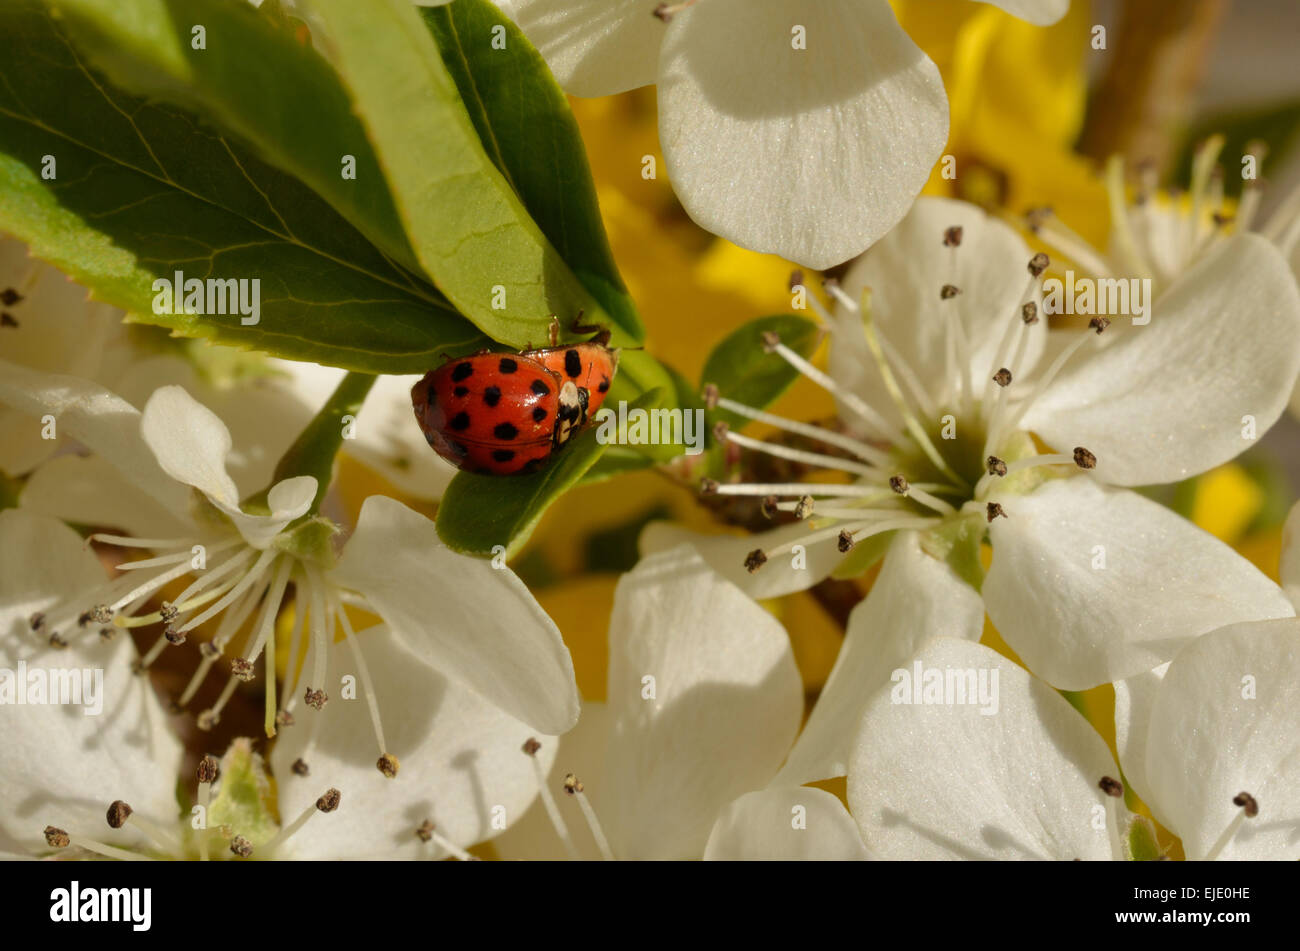 Les coccinelles sur feuilles avec fleurs poire de Bradford. Belle image de la nature d'insectes et de fleurs. Droit naturel de couleurs vives. Banque D'Images